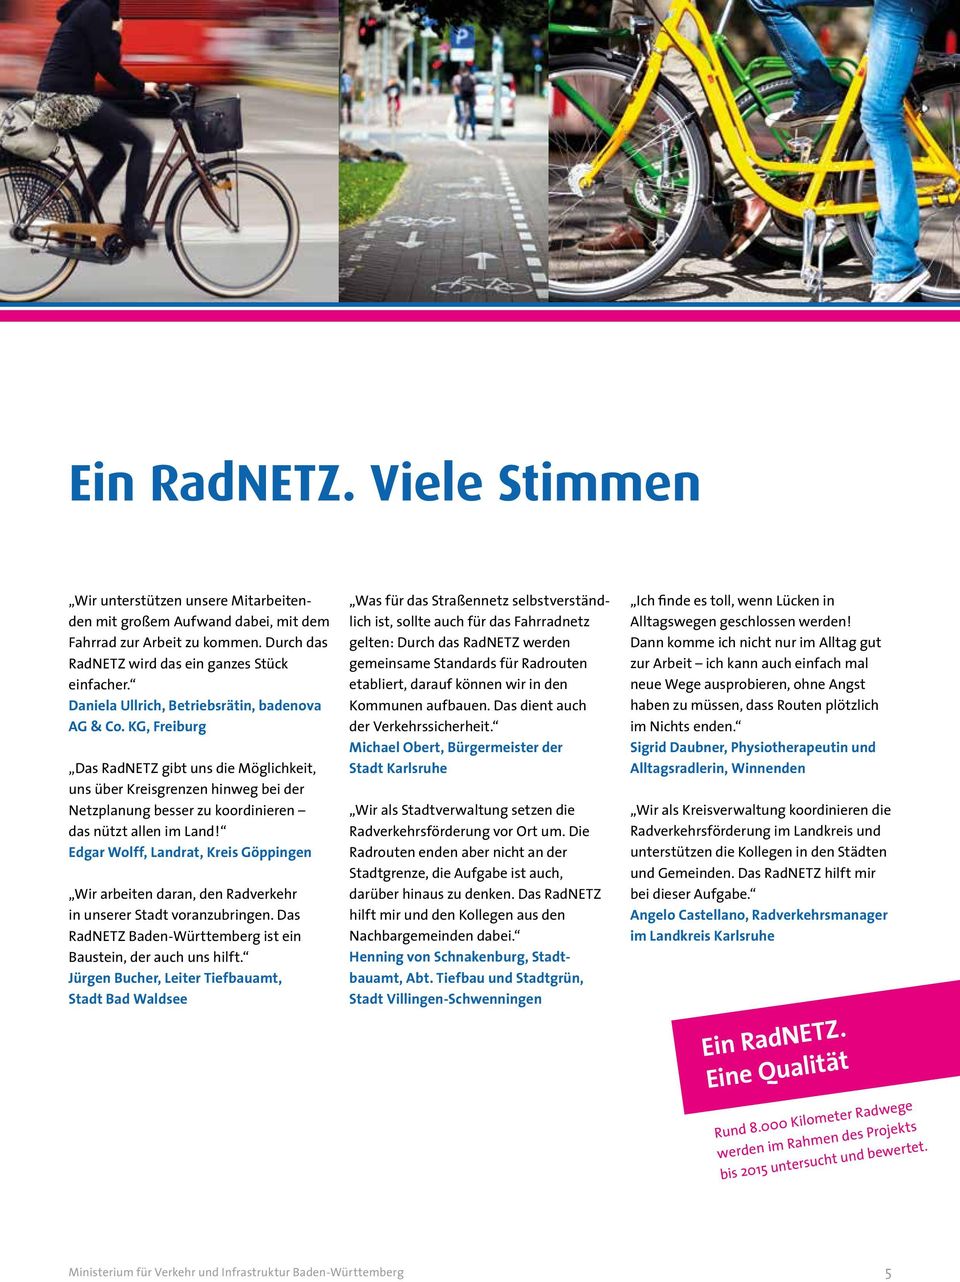 Edgar Wolff, Landrat, Kreis Göppingen Wir arbeiten daran, den Radverkehr in unserer Stadt voranzubringen. Das RadNETZ Baden-Württemberg ist ein Baustein, der auch uns hilft.